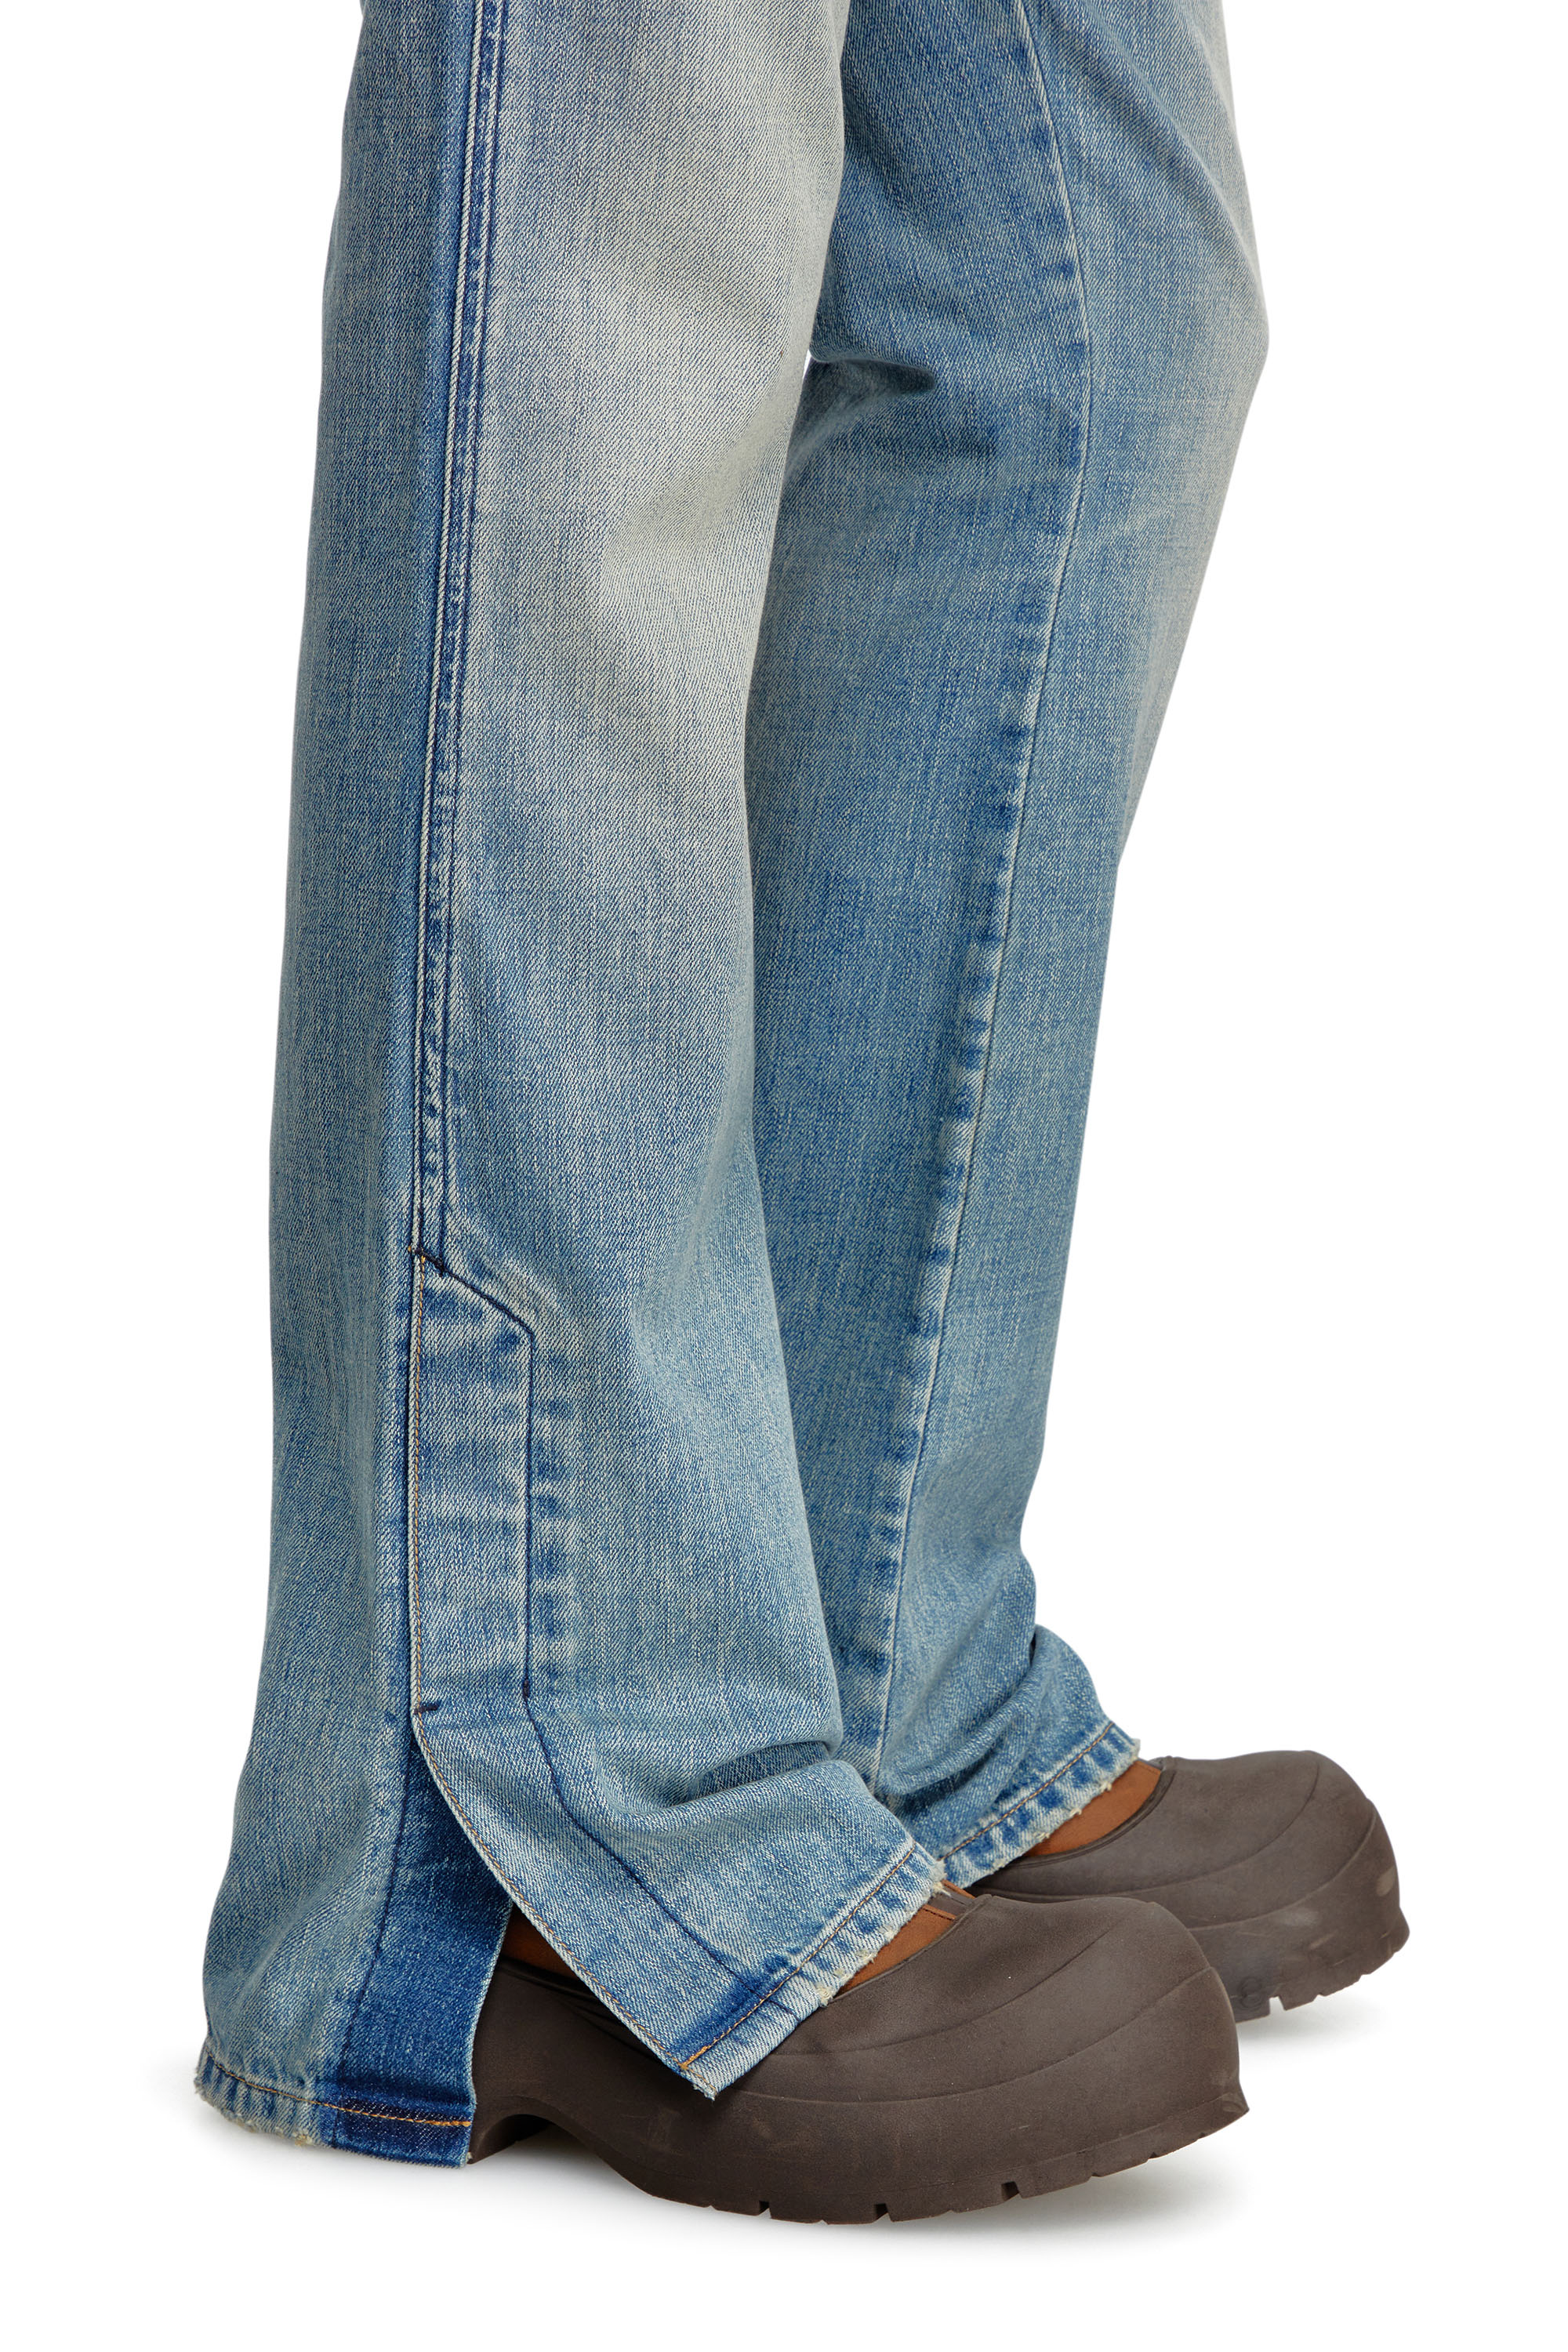 Diesel - Bootcut Jeans D-Backler 0GRDN, Hombre Bootcut Jeans - D-Backler in Azul marino - Image 4